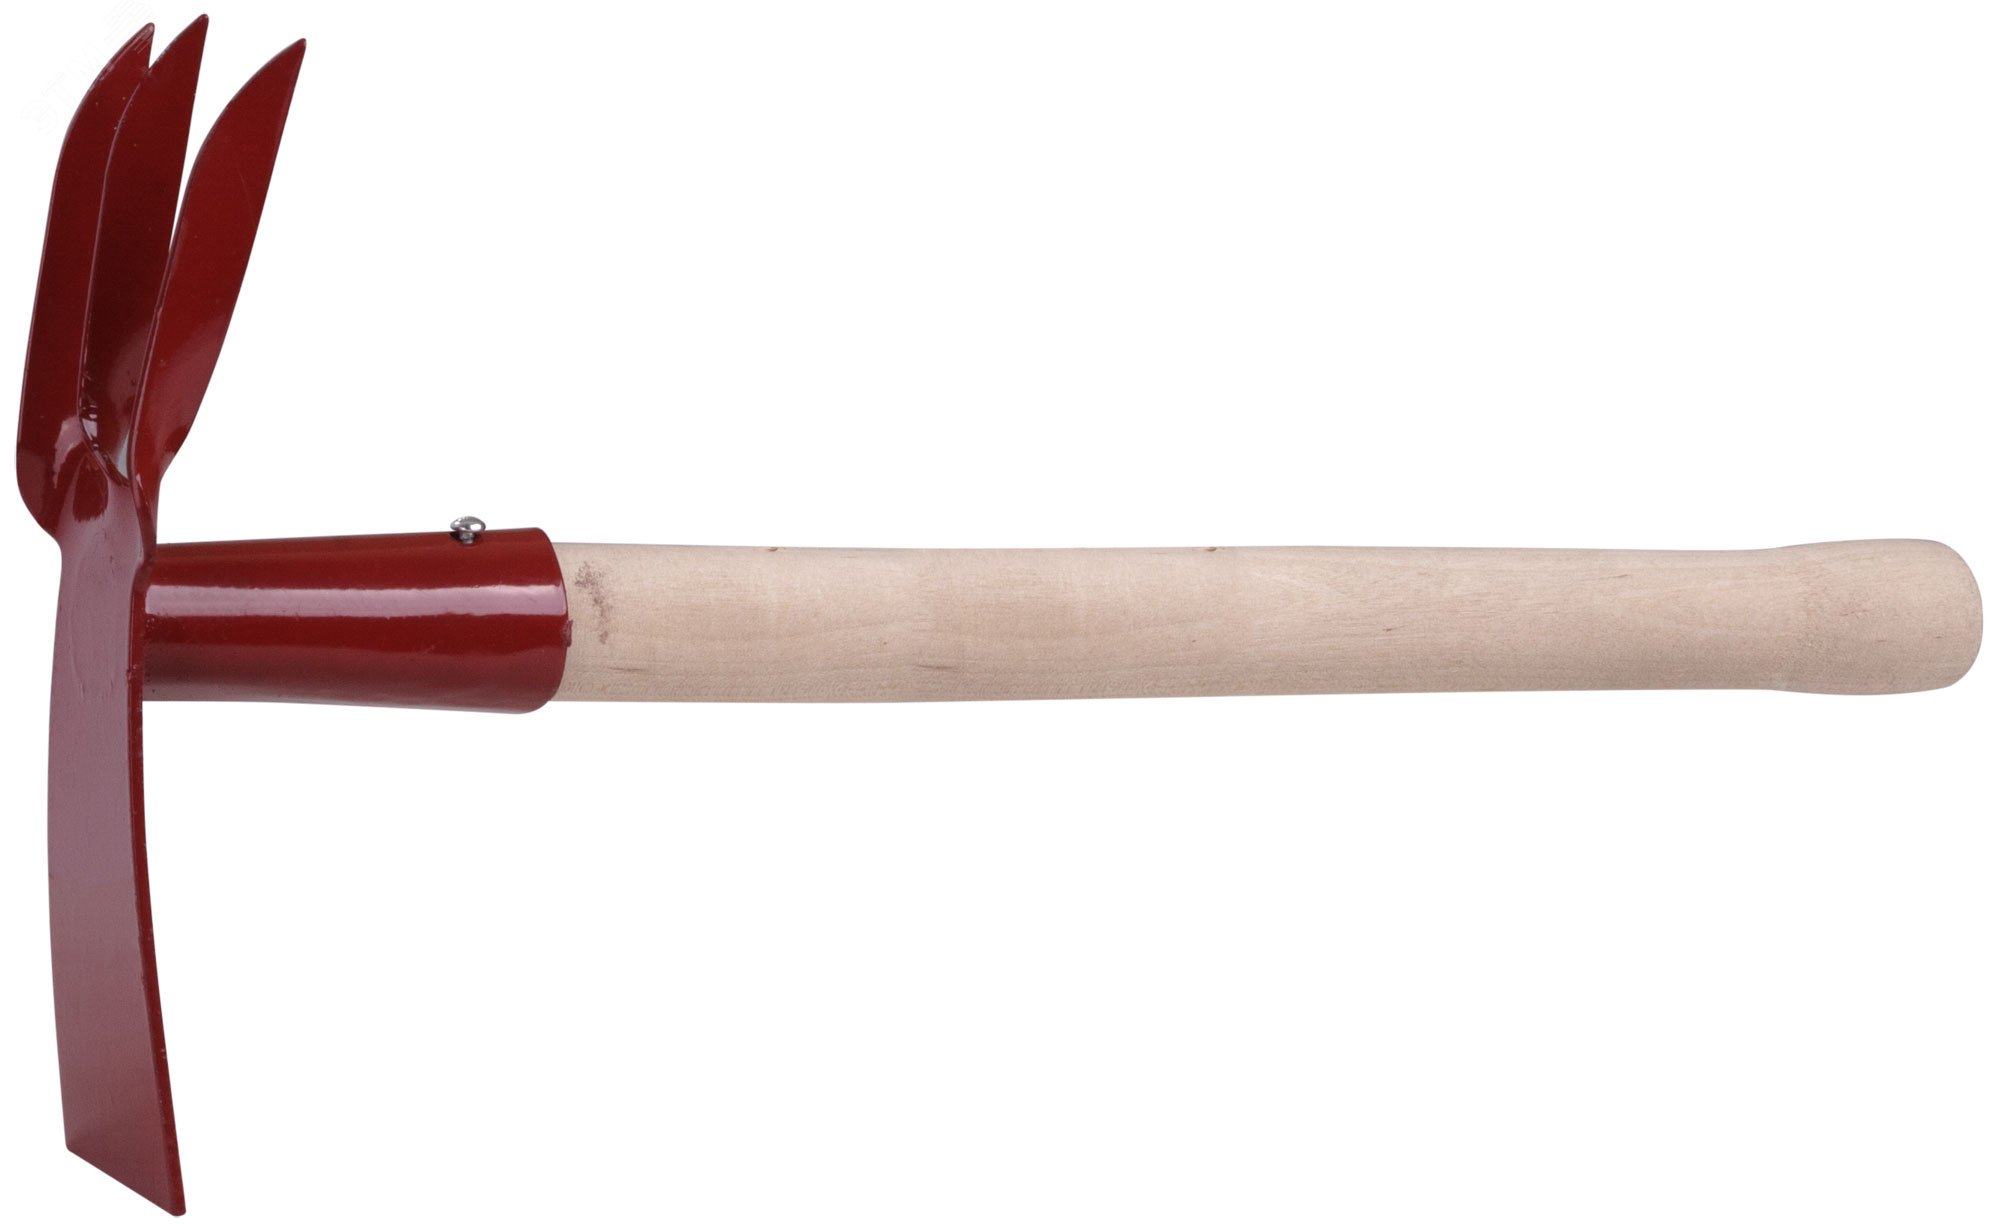 Мотыжка комбинированная с деревянной ручкой, 3 витых зуба, профиль трапеция 76812 РОС - превью